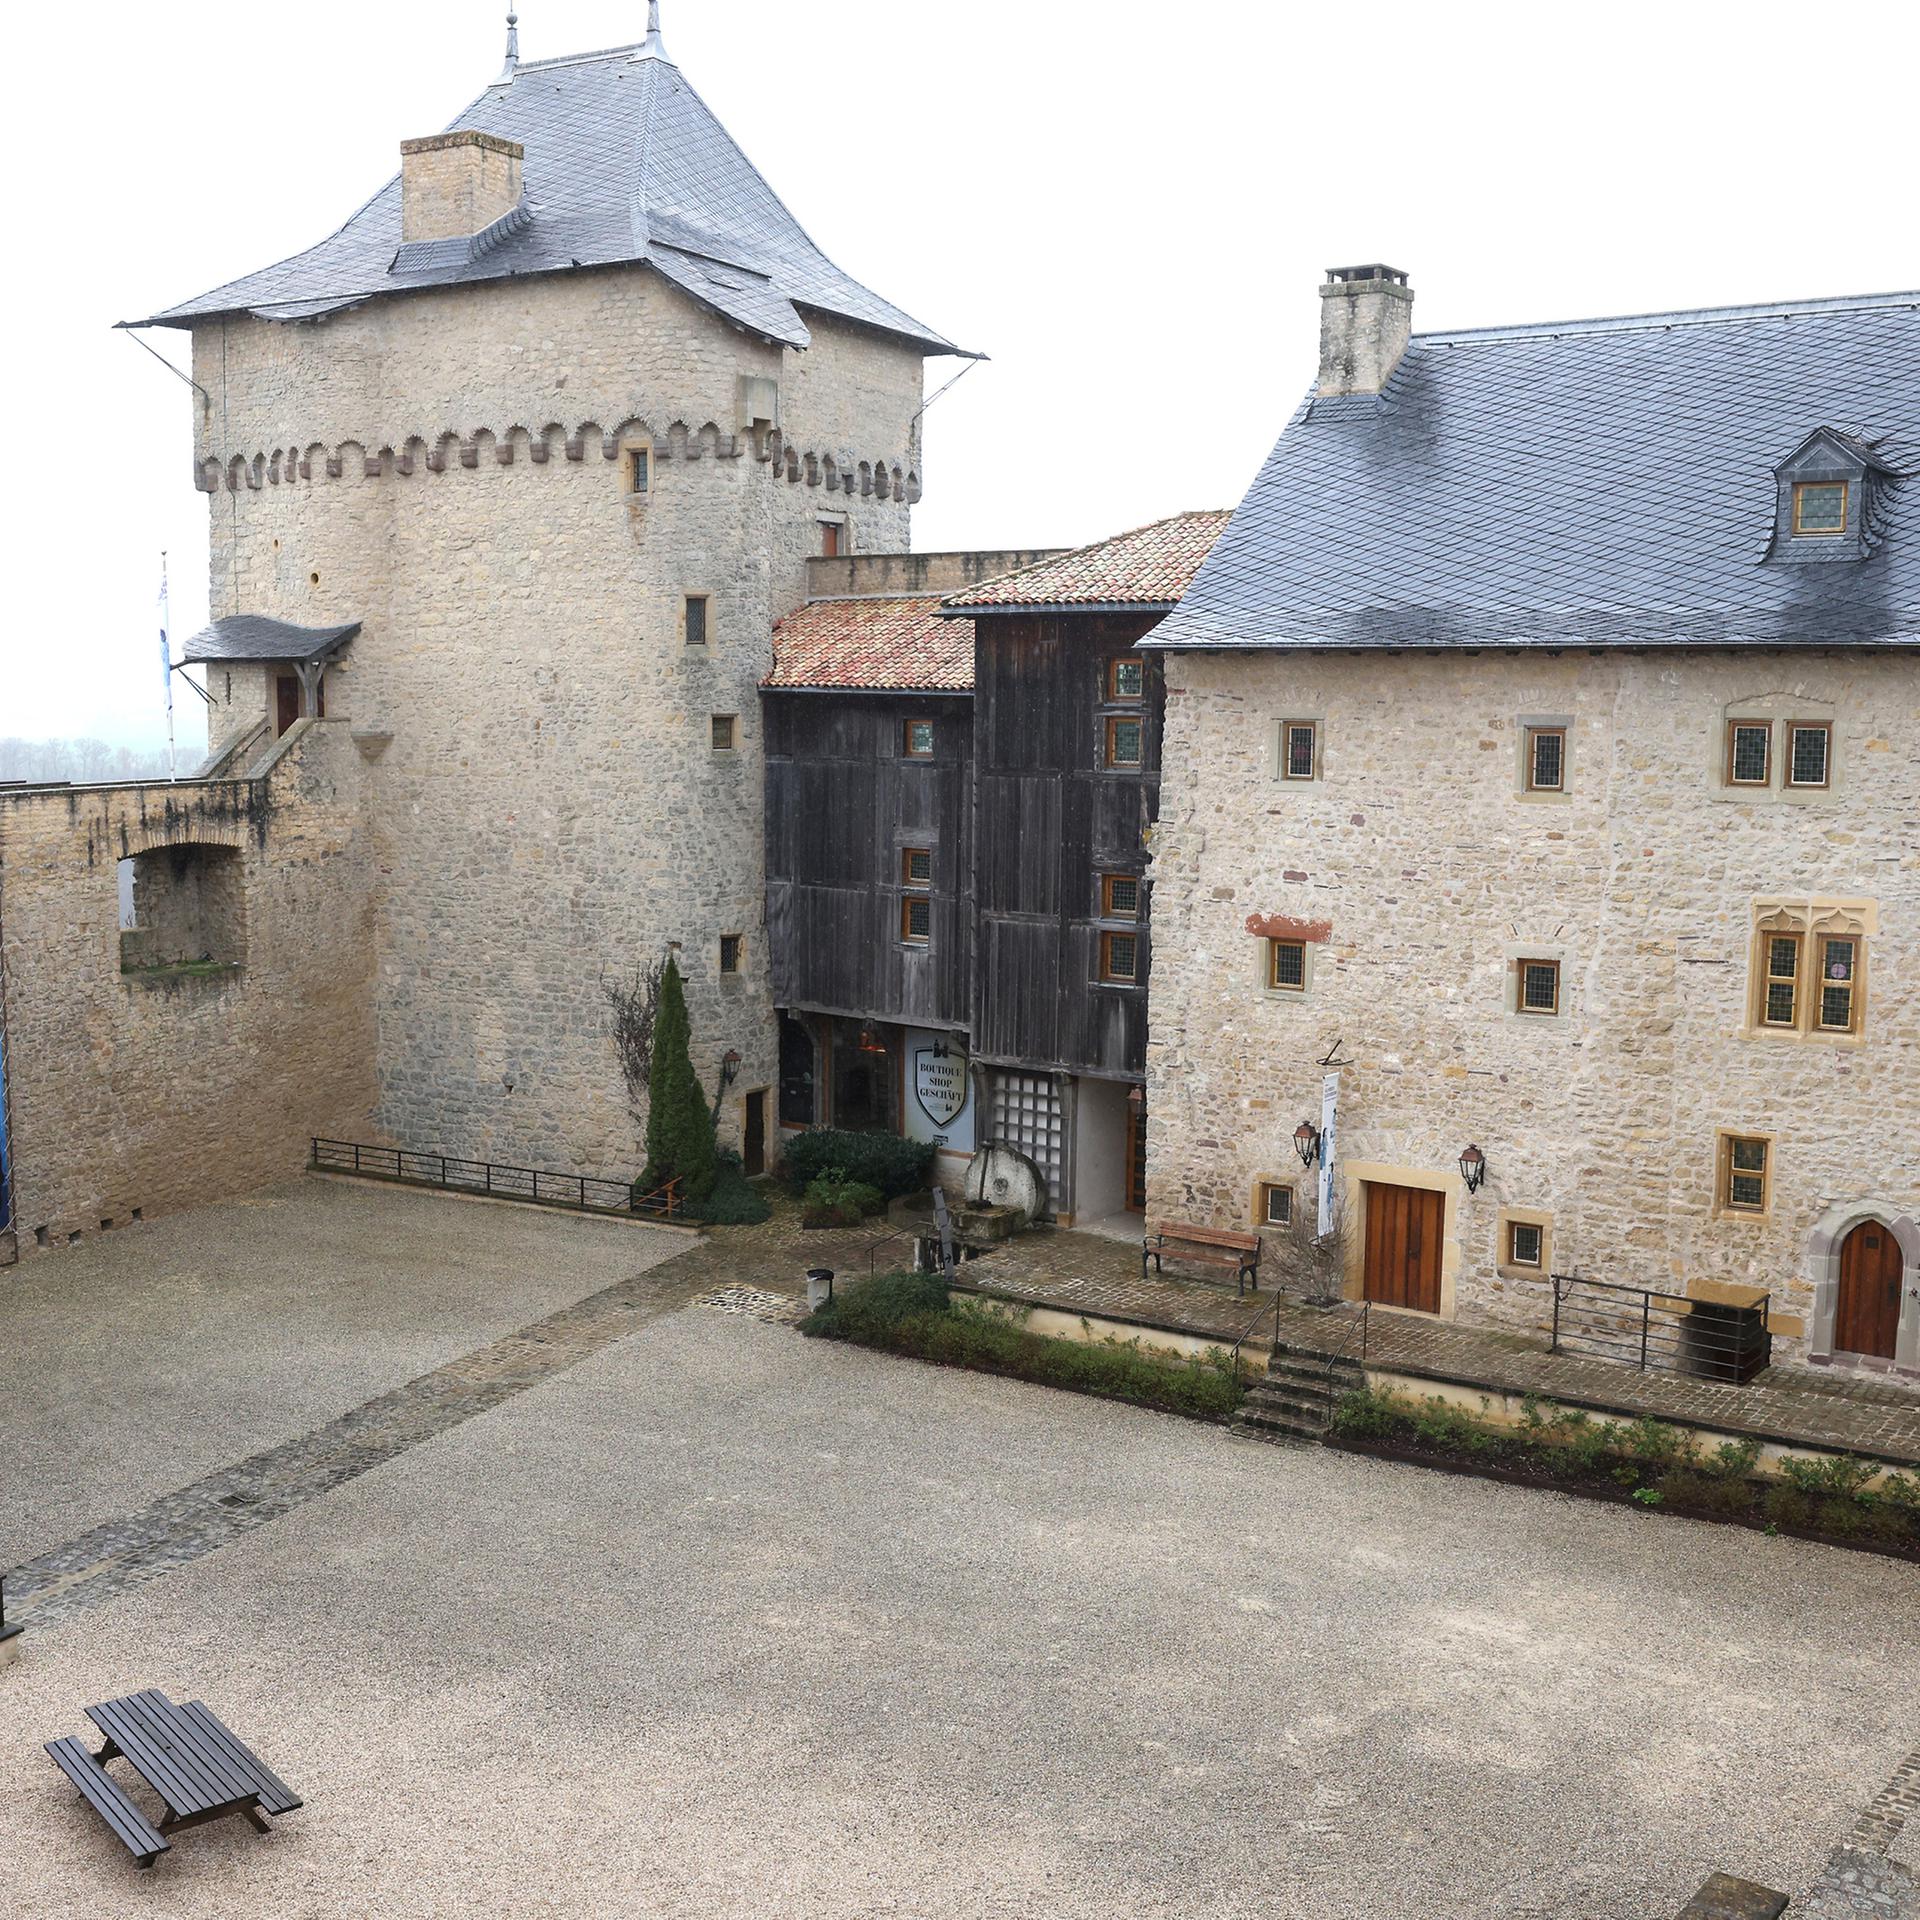 Le château de Malbrouck accueille depuis le 7 avril l'exposition "Elle résiste, elles résistent", consacrée notamment à la BD "Madeleine résistante". Ce week-end, le lieu accueille aussi le 6e festival de la BD.